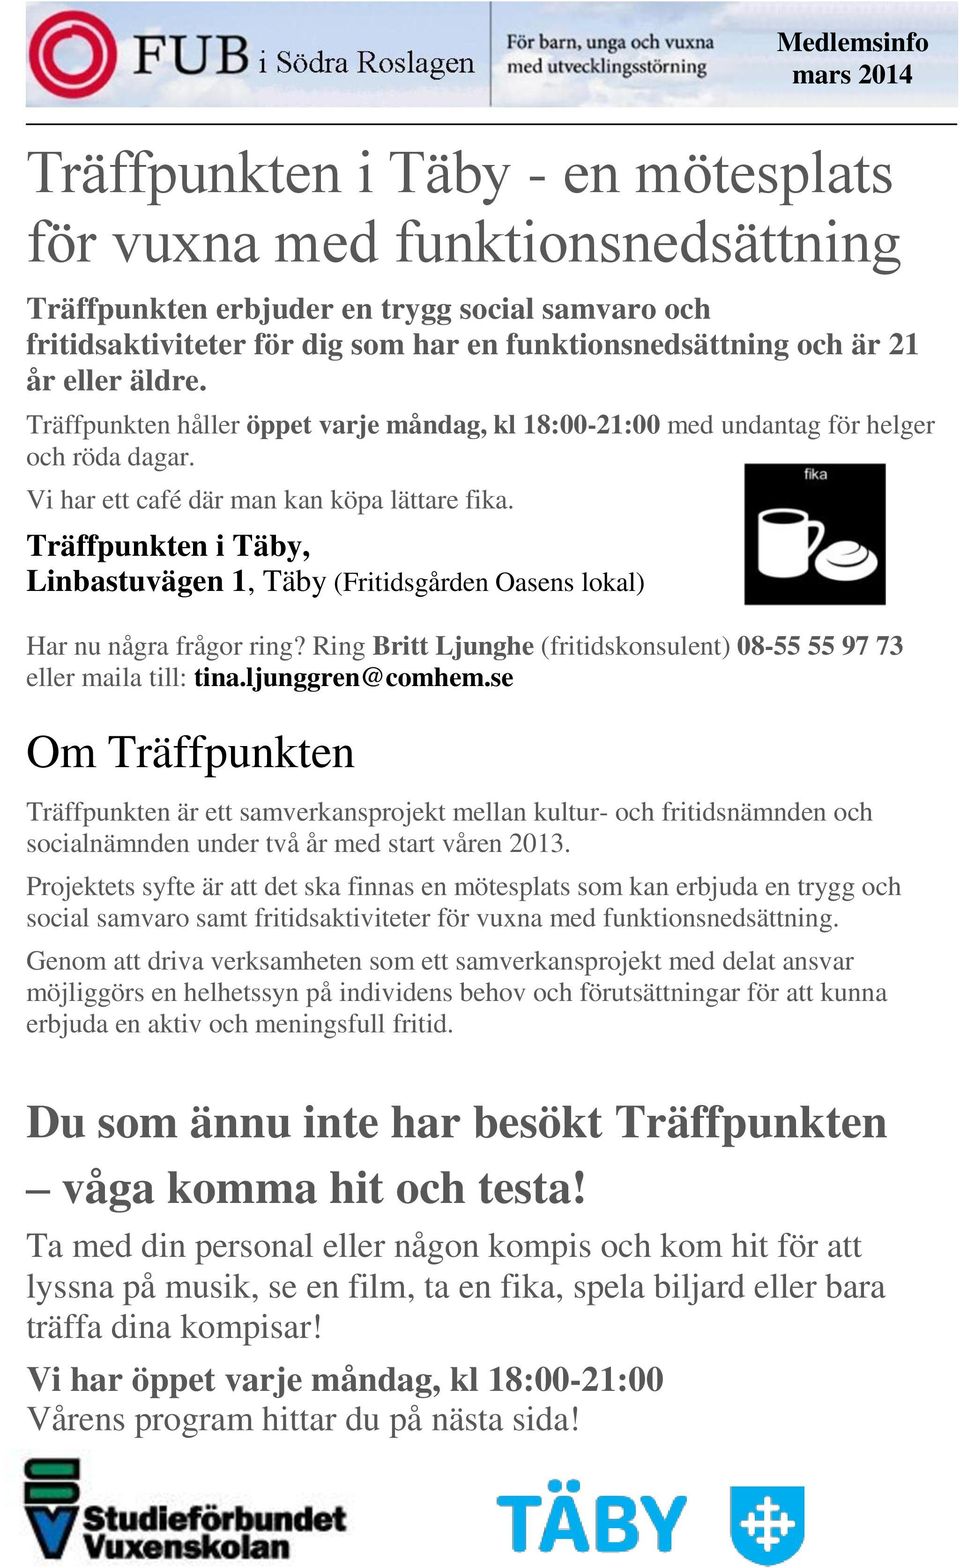 Träffpunkten i Täby, Linbastuvägen 1, Täby (Fritidsgården Oasens lokal) Har nu några frågor ring? Ring Britt Ljunghe (fritidskonsulent) 08-55 55 97 73 eller maila till: tina.ljunggren@comhem.